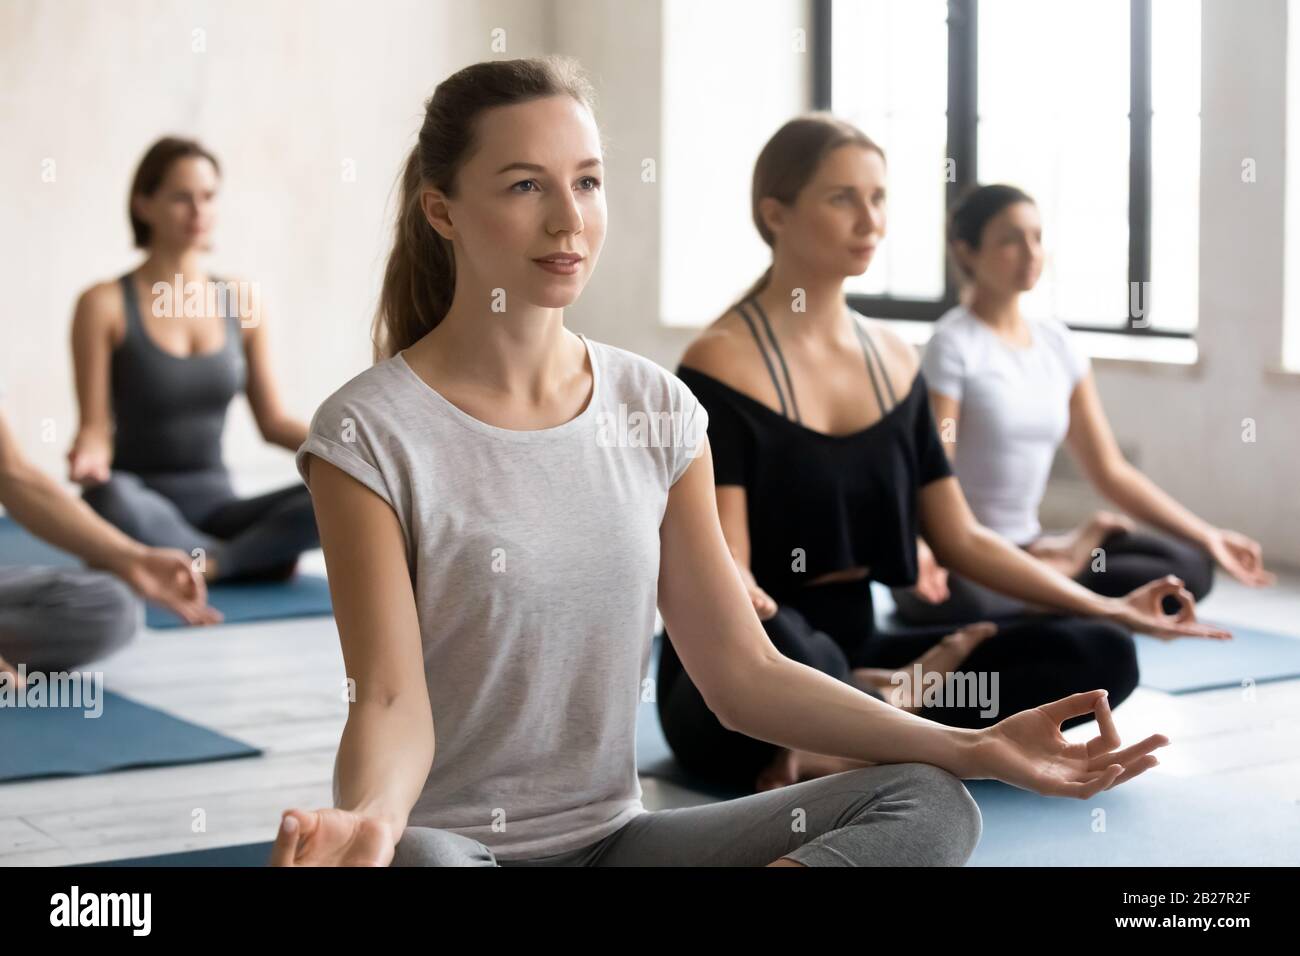 Female yoga instructor and like-minded group of people meditating Stock Photo